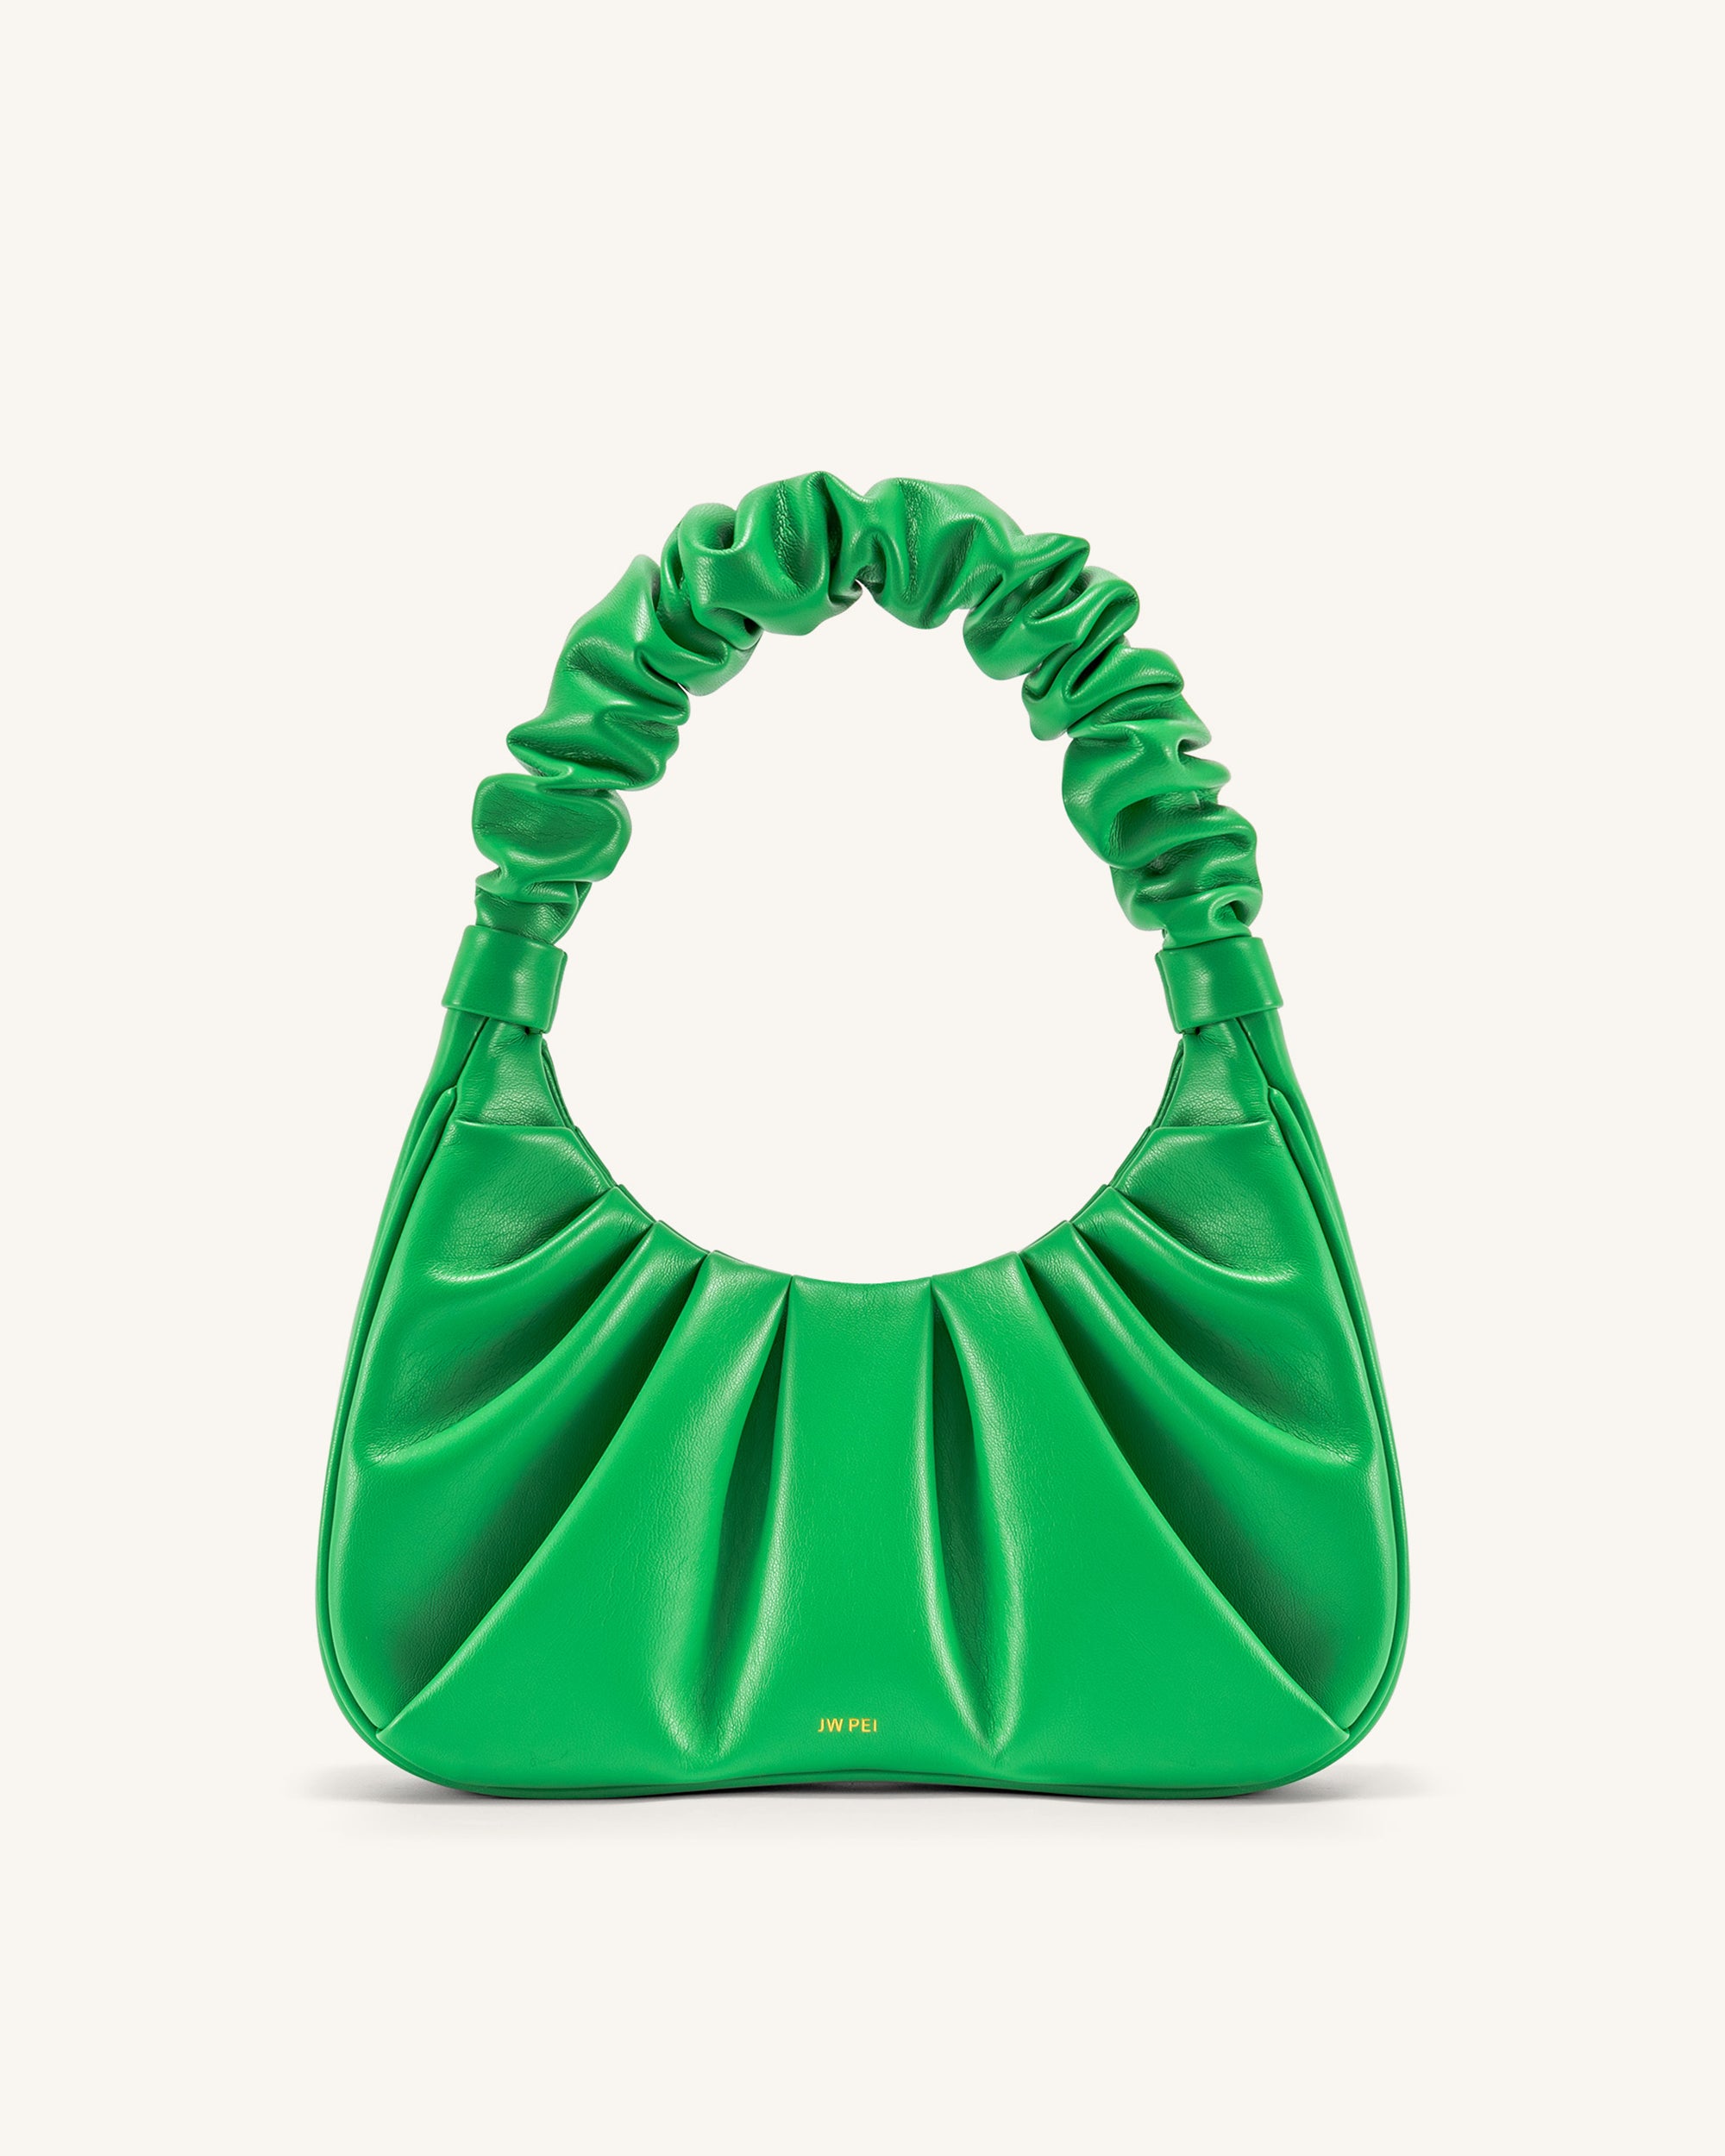 JW PEI Fashion Bag  Bags, Fashion bags, Vegan leather bag